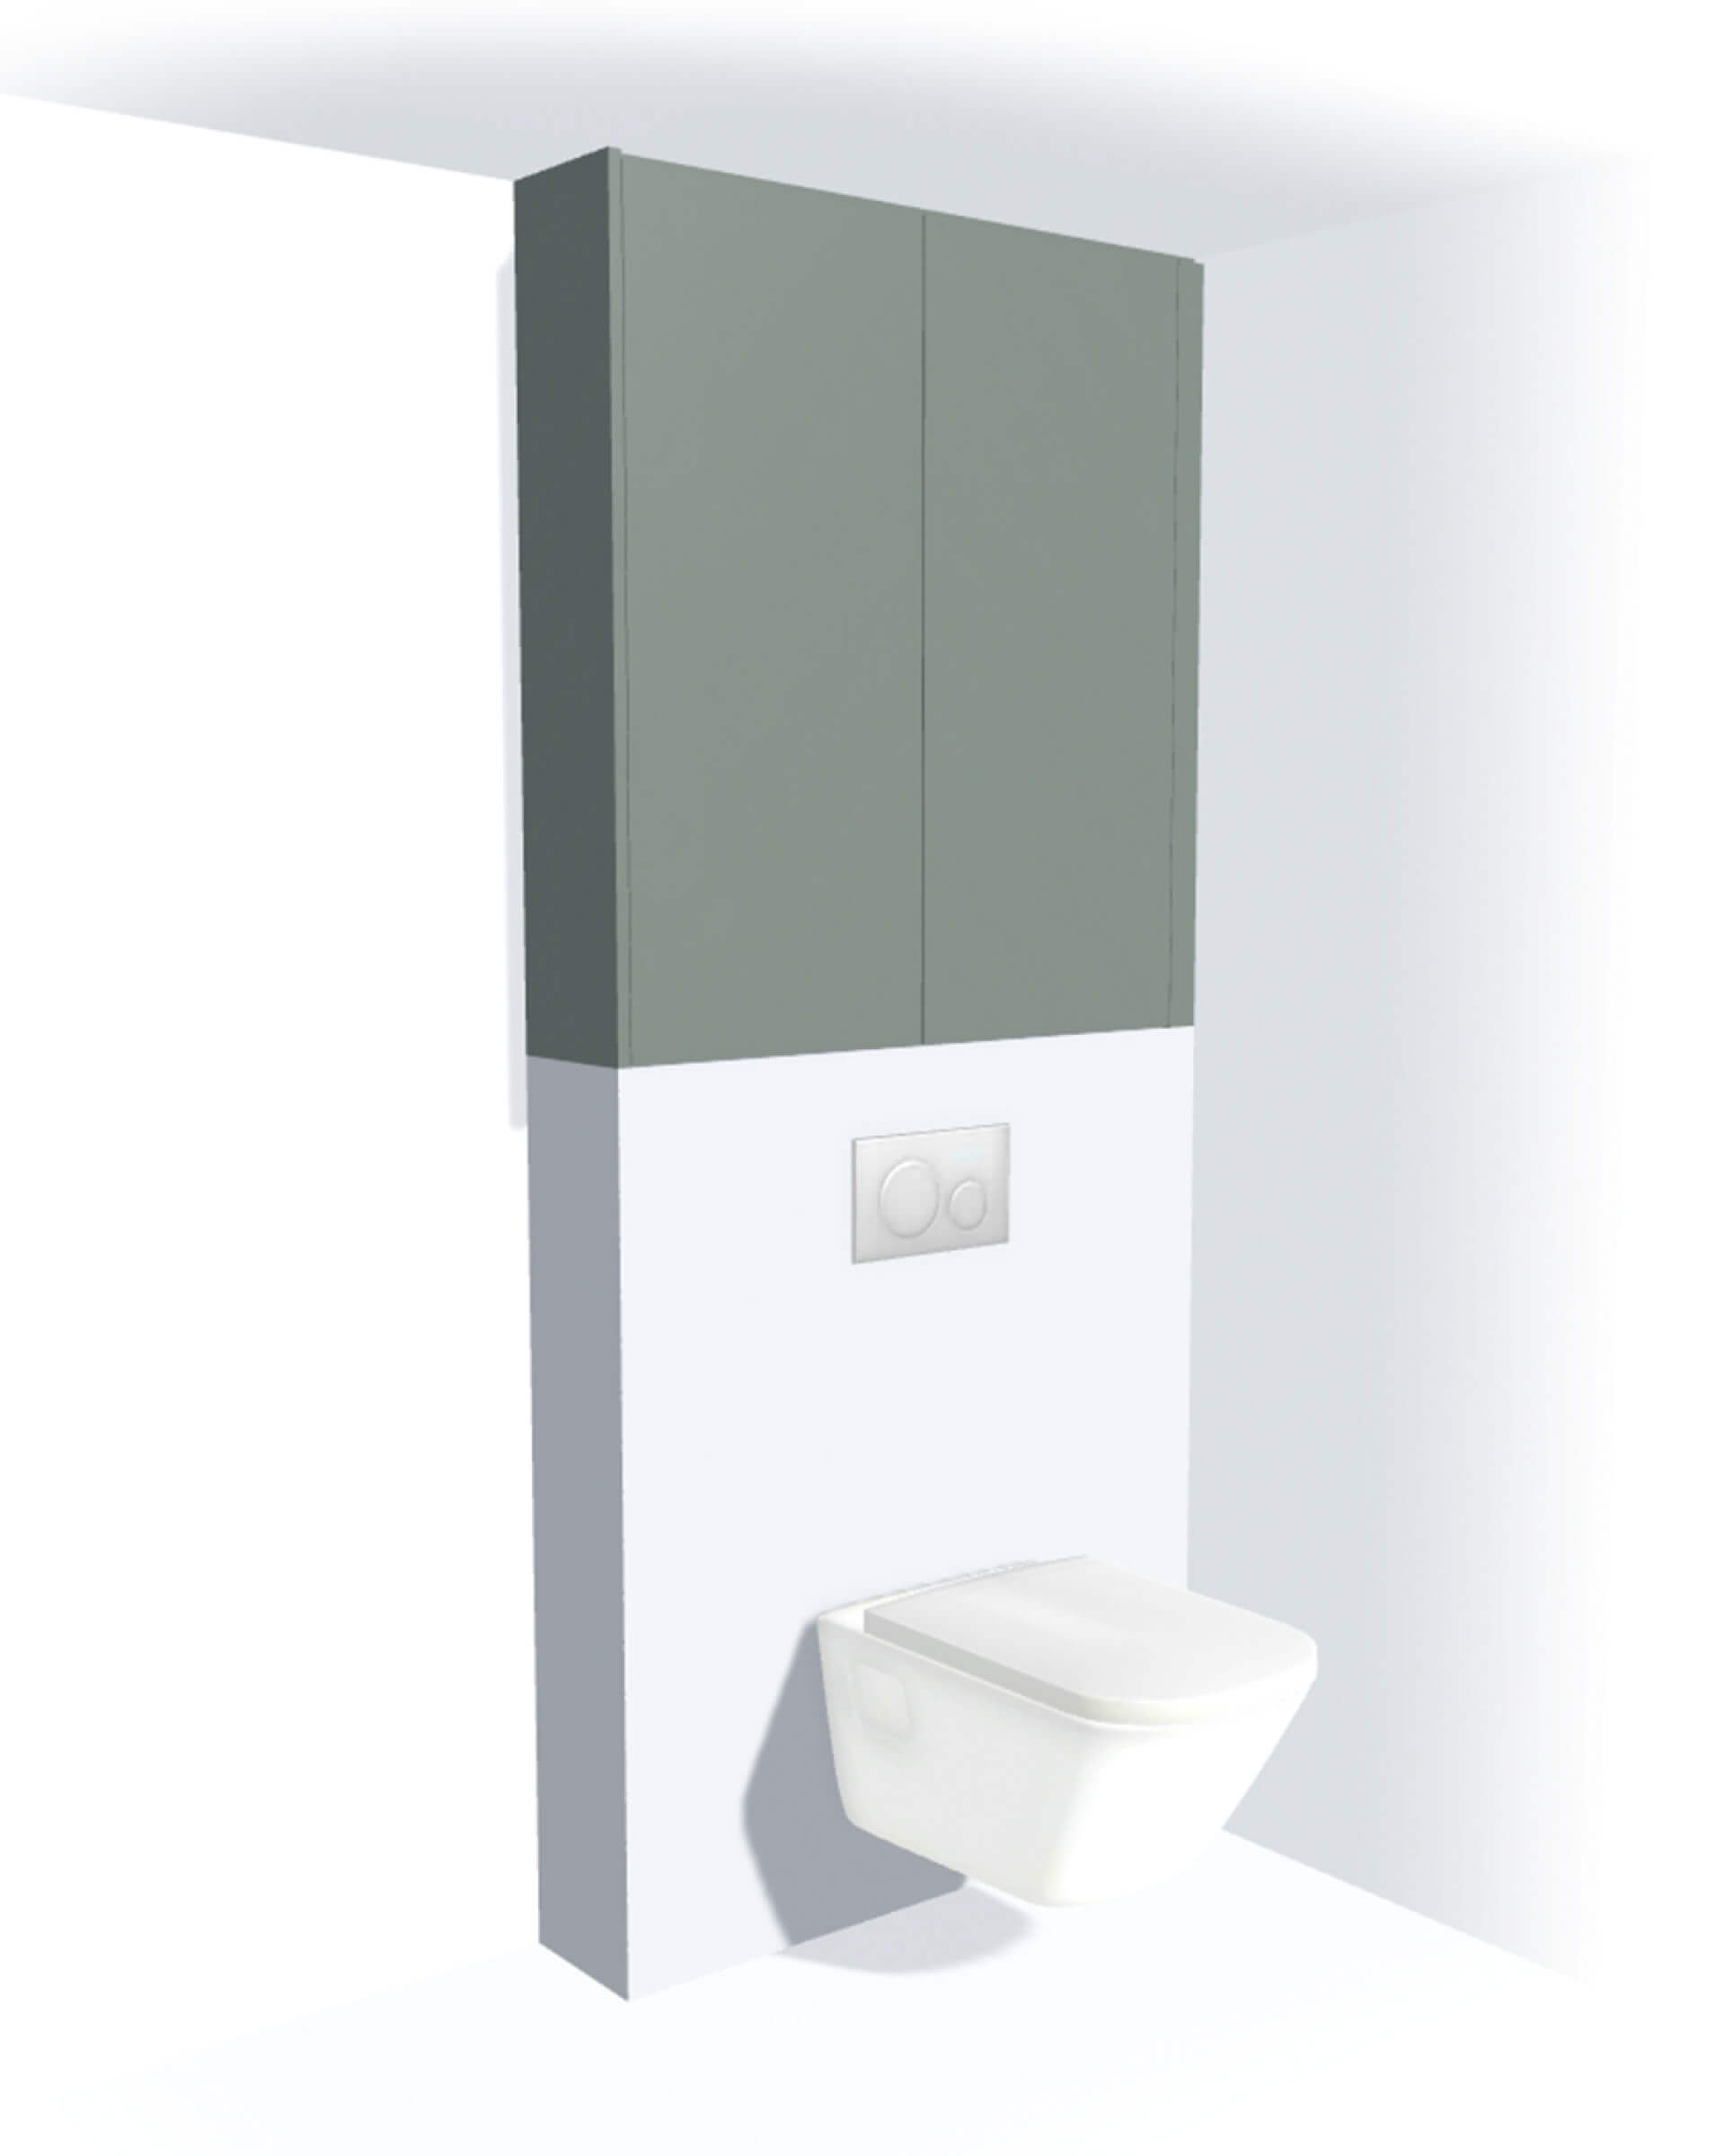 Toiletkast op maat op de muur boven de wc in de kleur Industrial Green